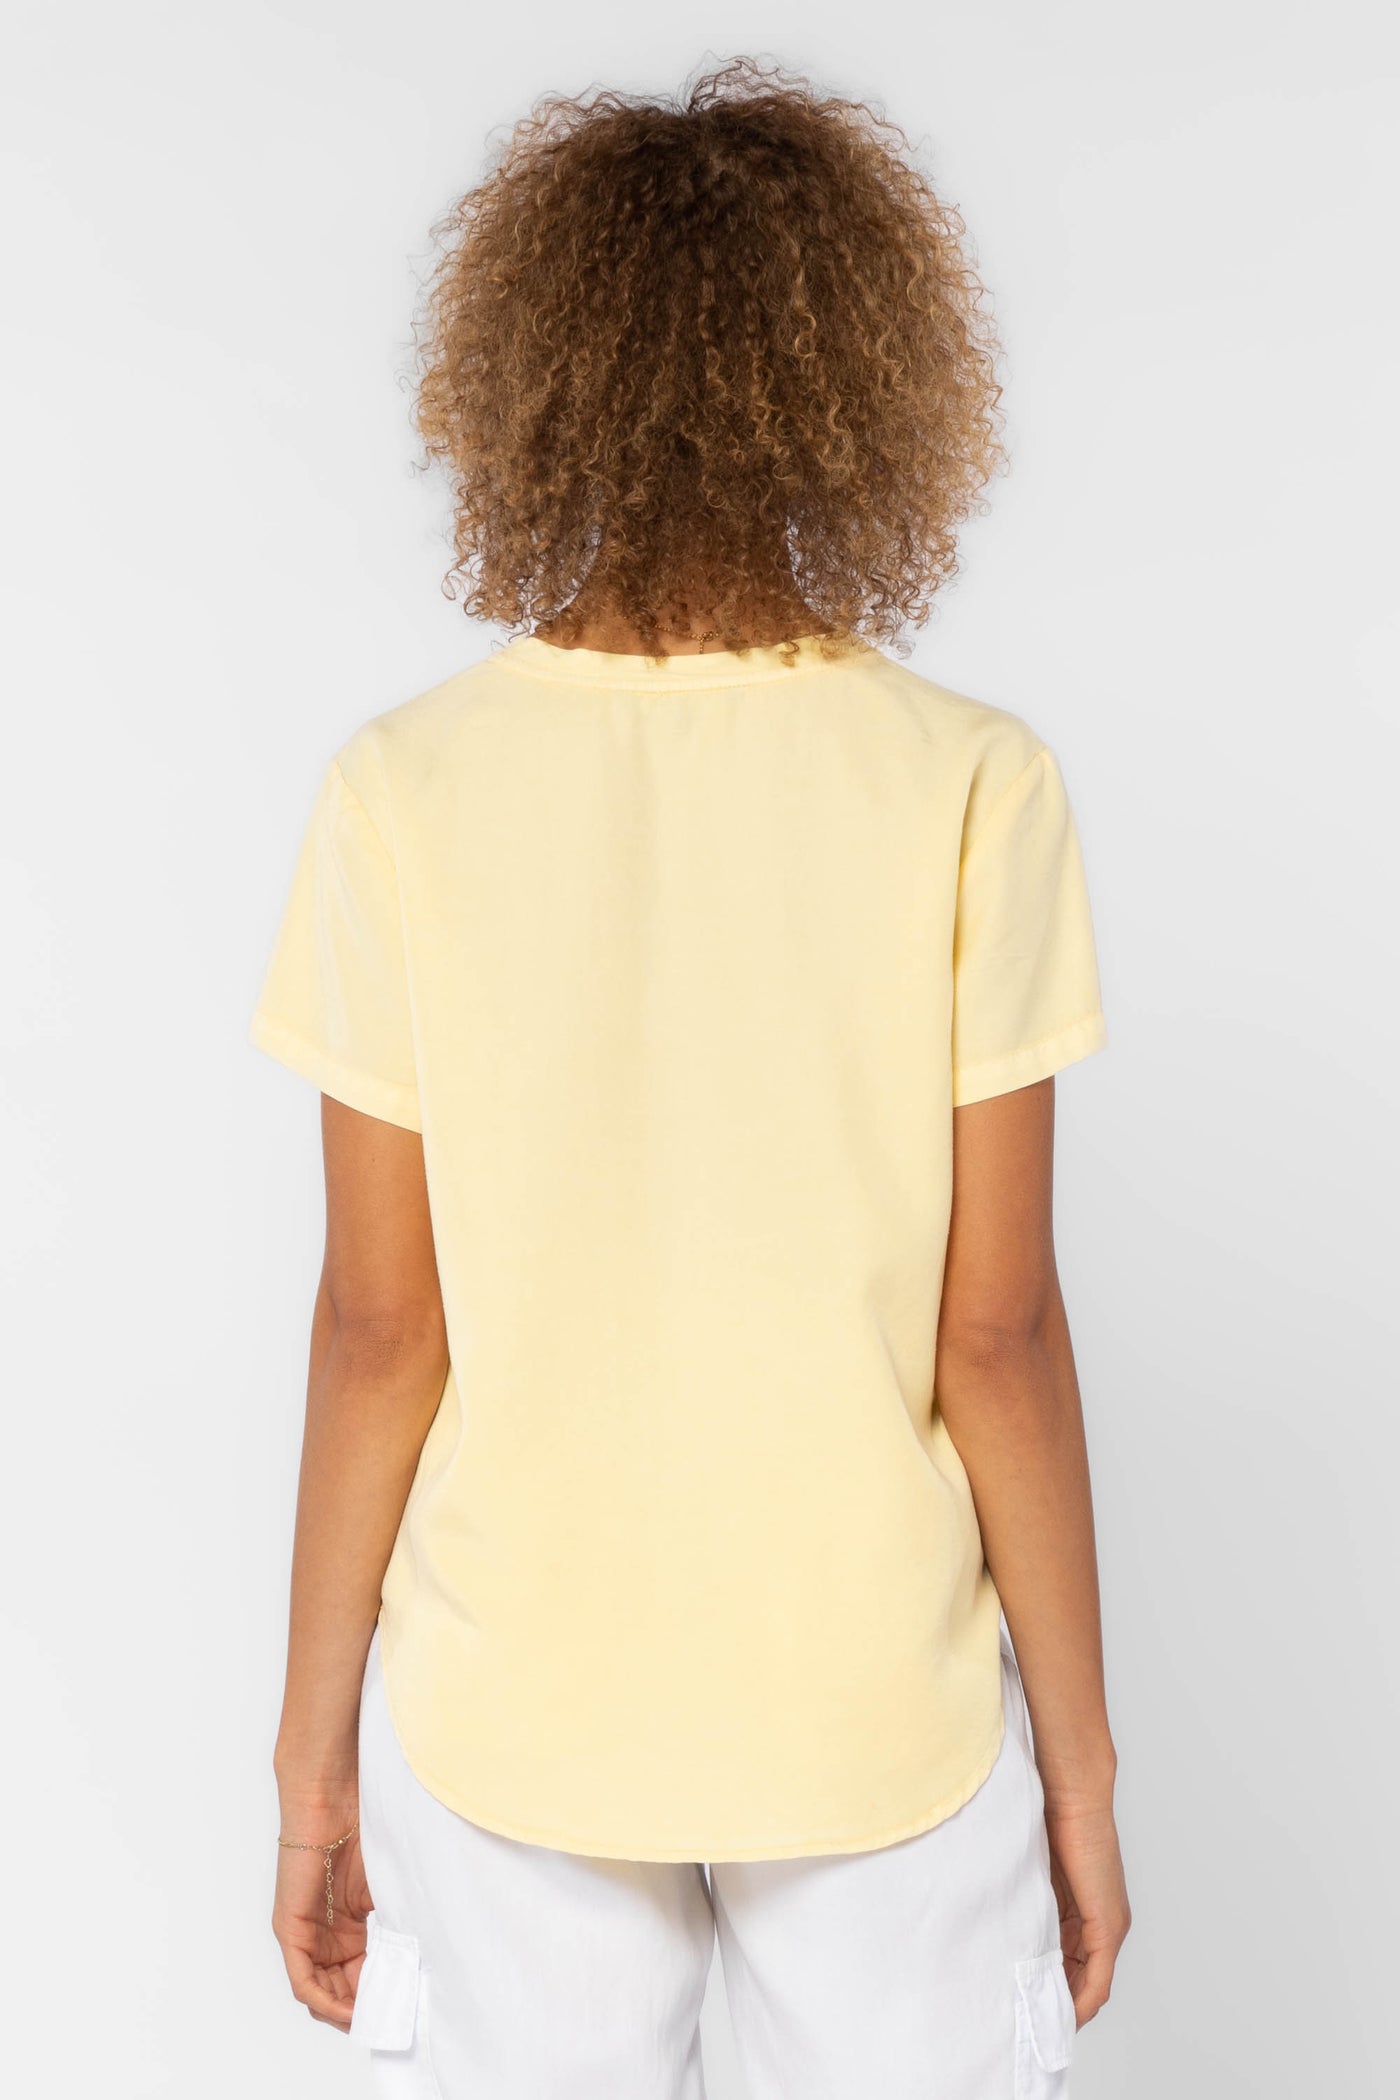 Lanelle Yellow Shirt - Tops - Velvet Heart Clothing